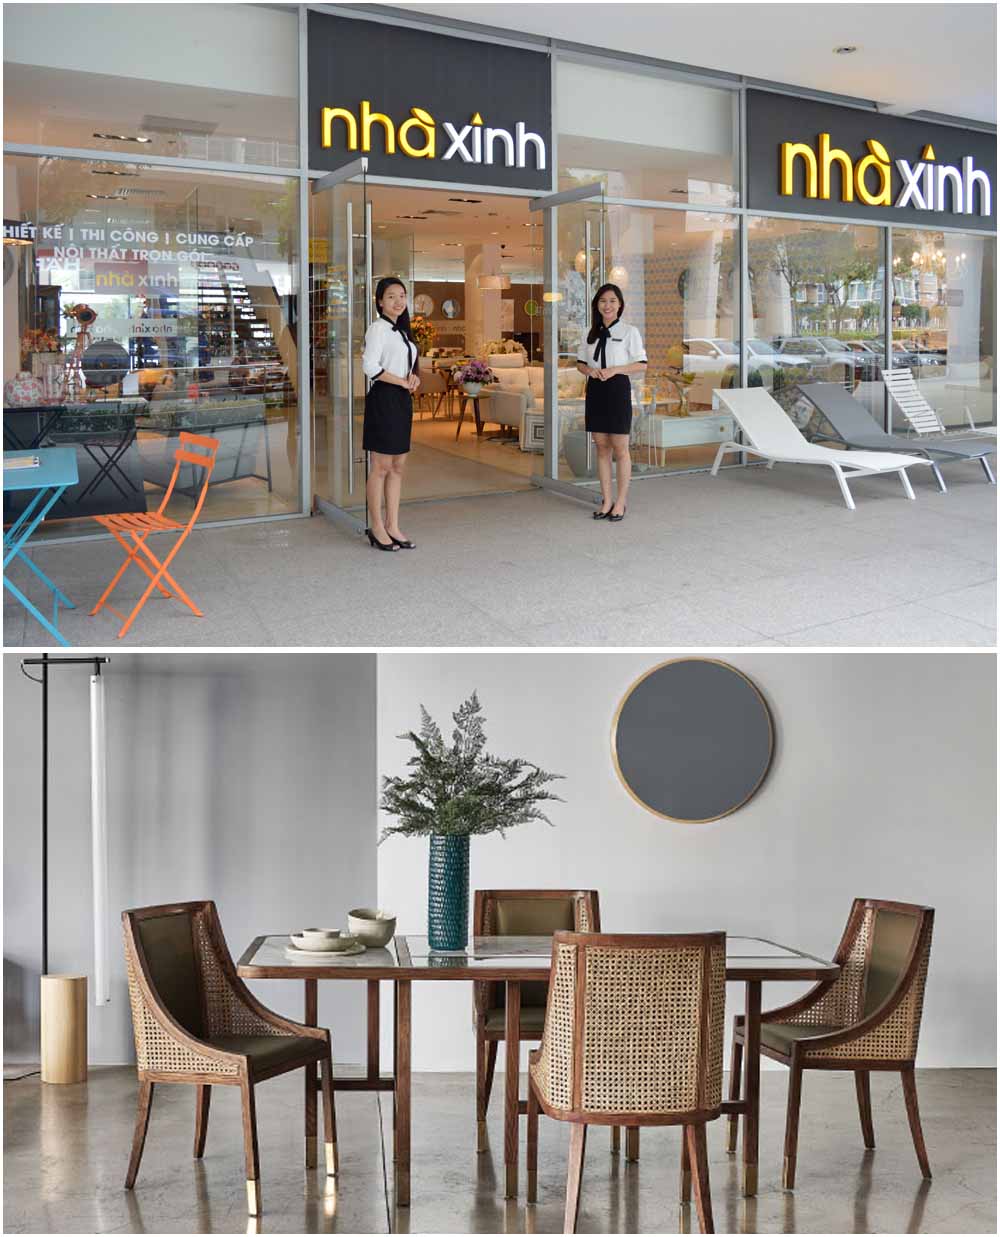 Cửa hàng bàn ghế ăn đẹp nhập khẩu Nhà Xinh